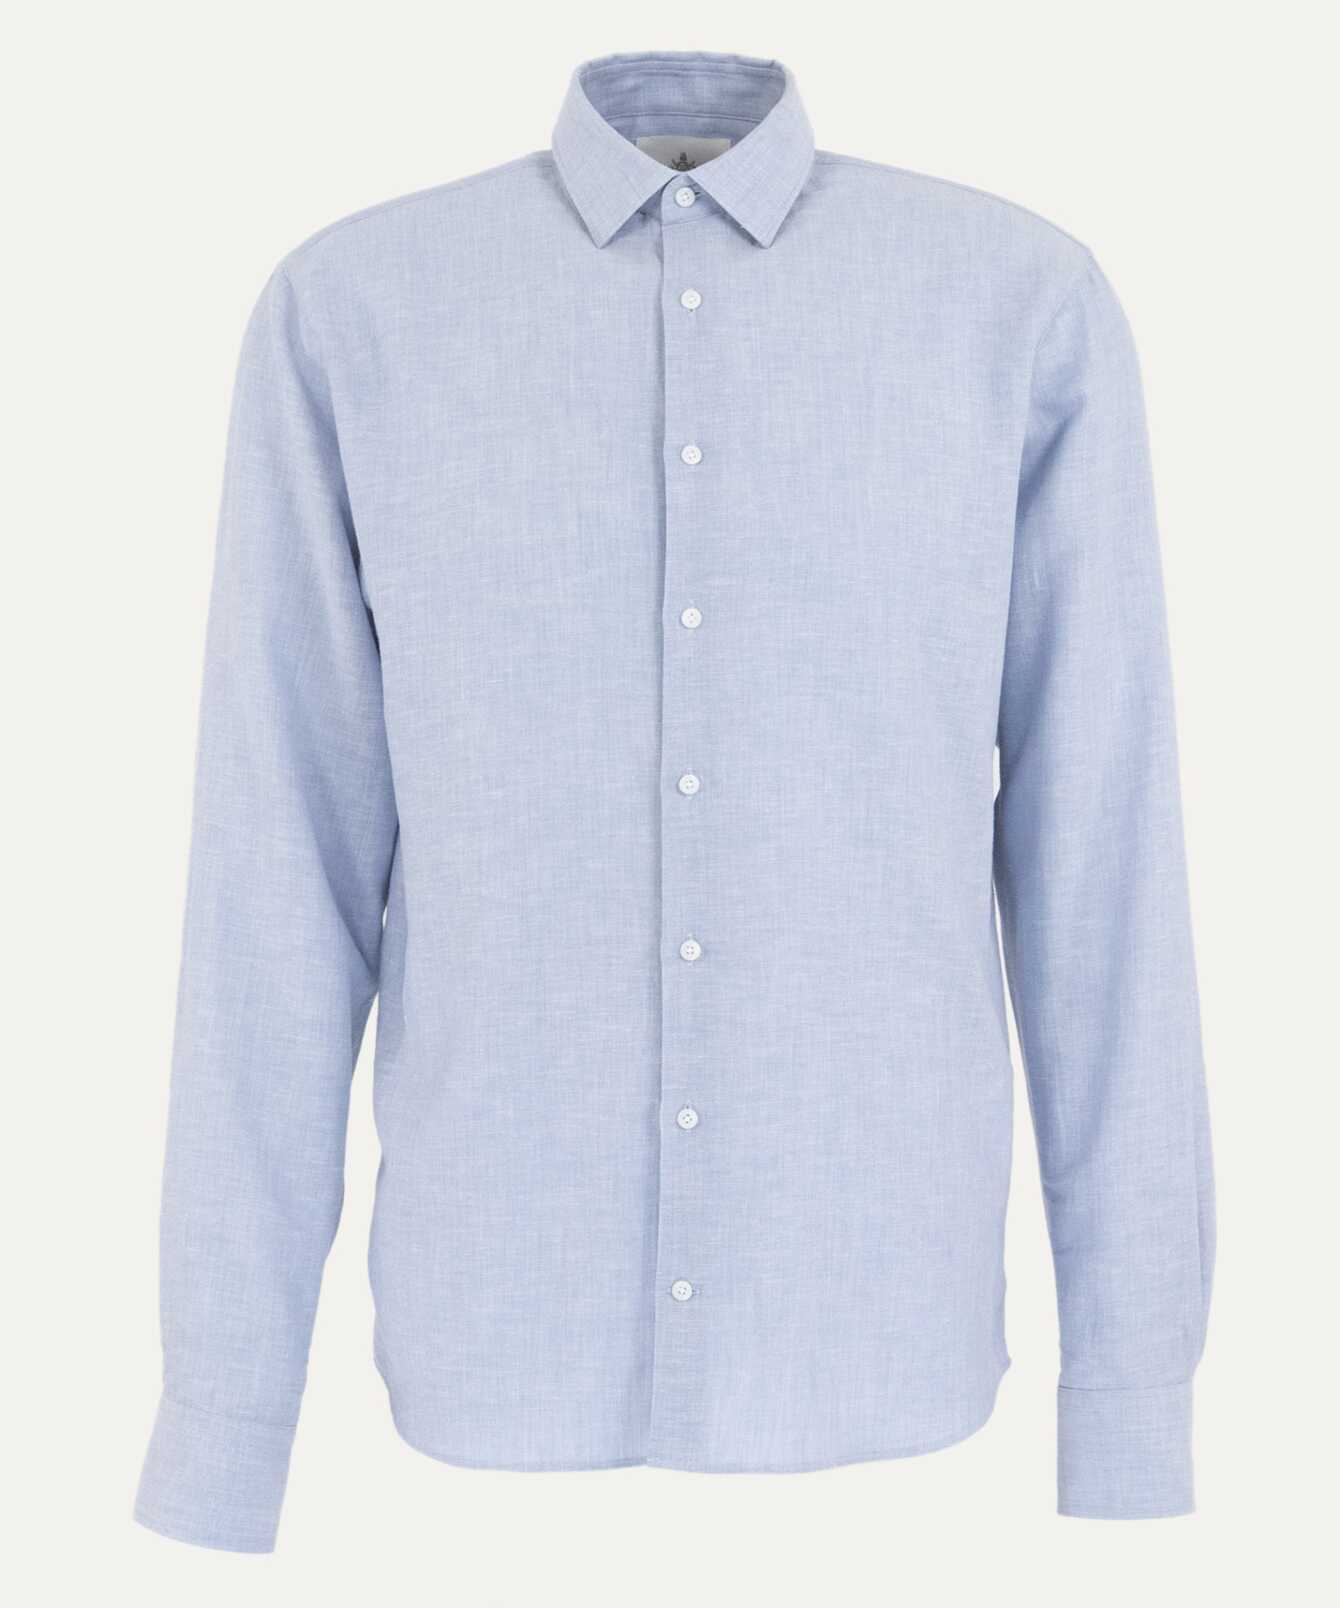 Shirt Webster Light Blue Cotton Linen Shirt  The Shirt Factory